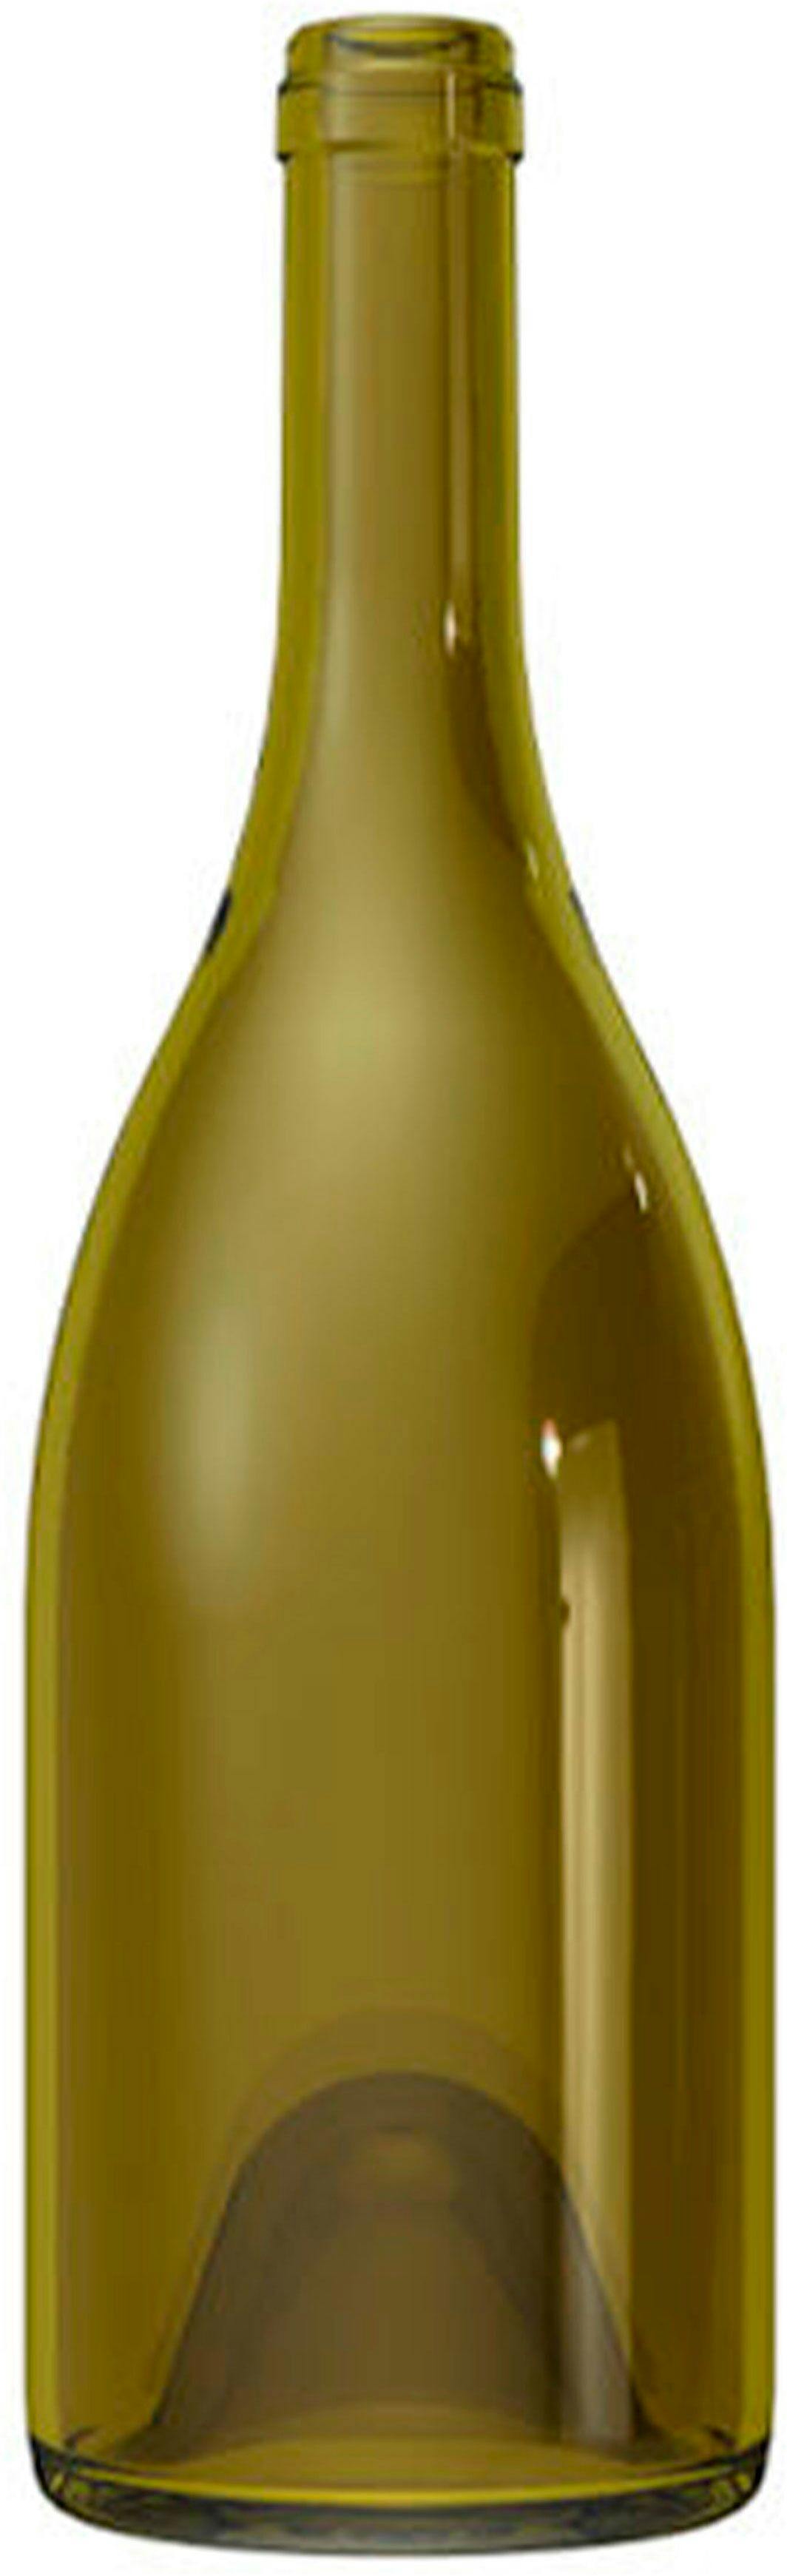 Flasche Burgunder  DUCASSE 750 ml BG-Korken